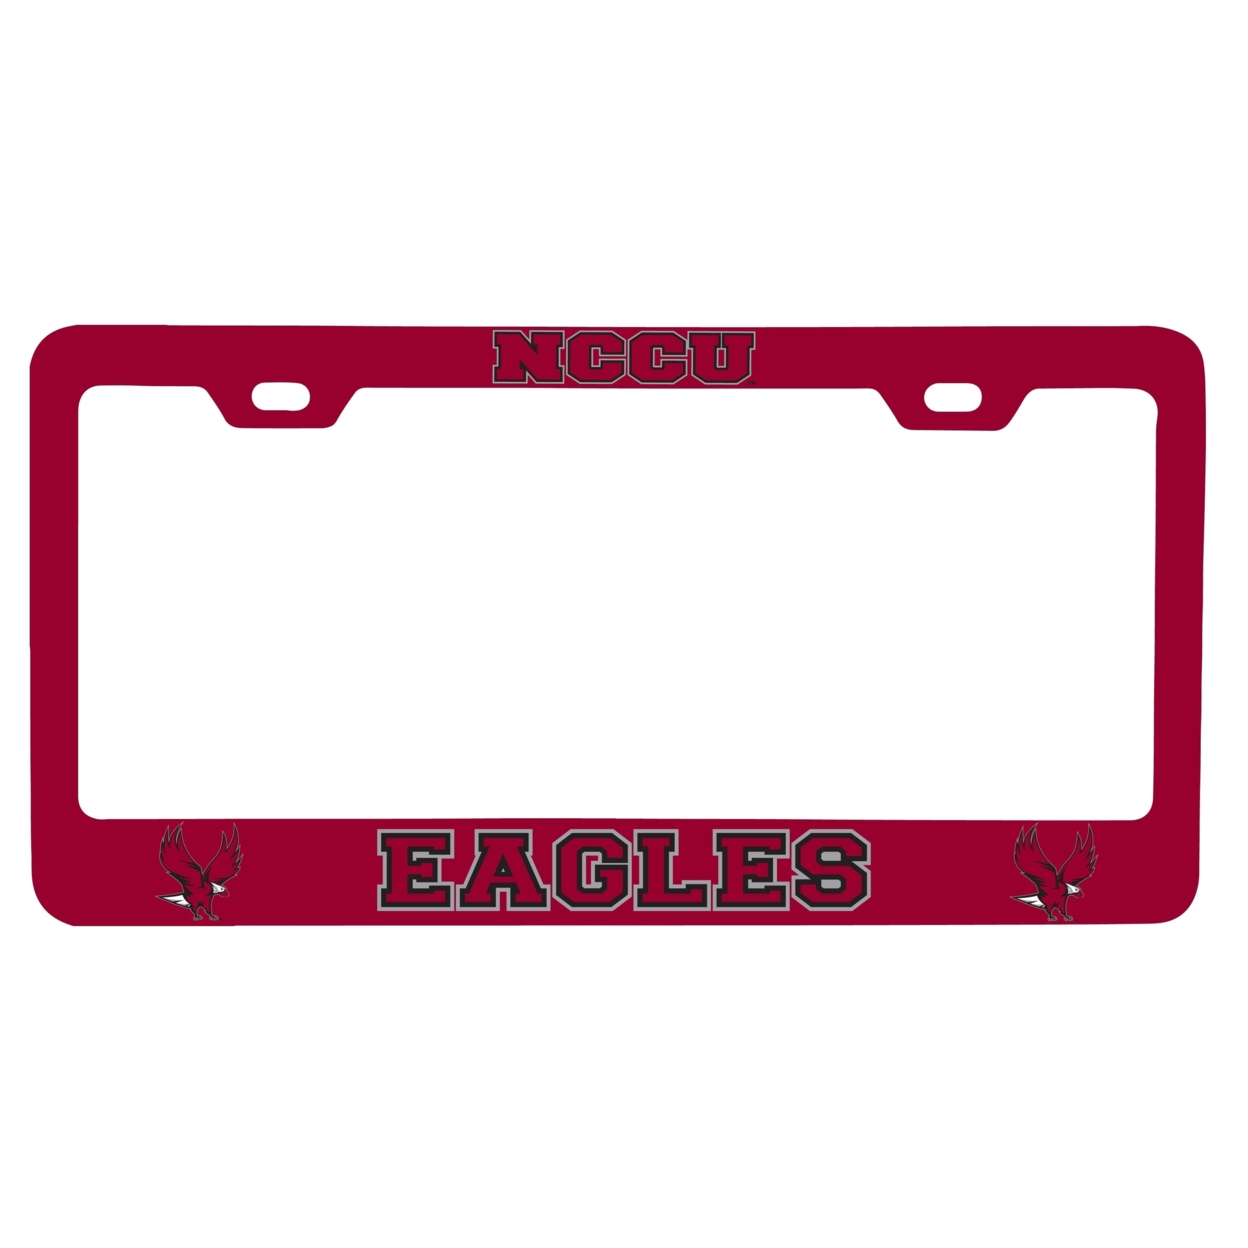 North Carolina Central Eagles License Plate Frame